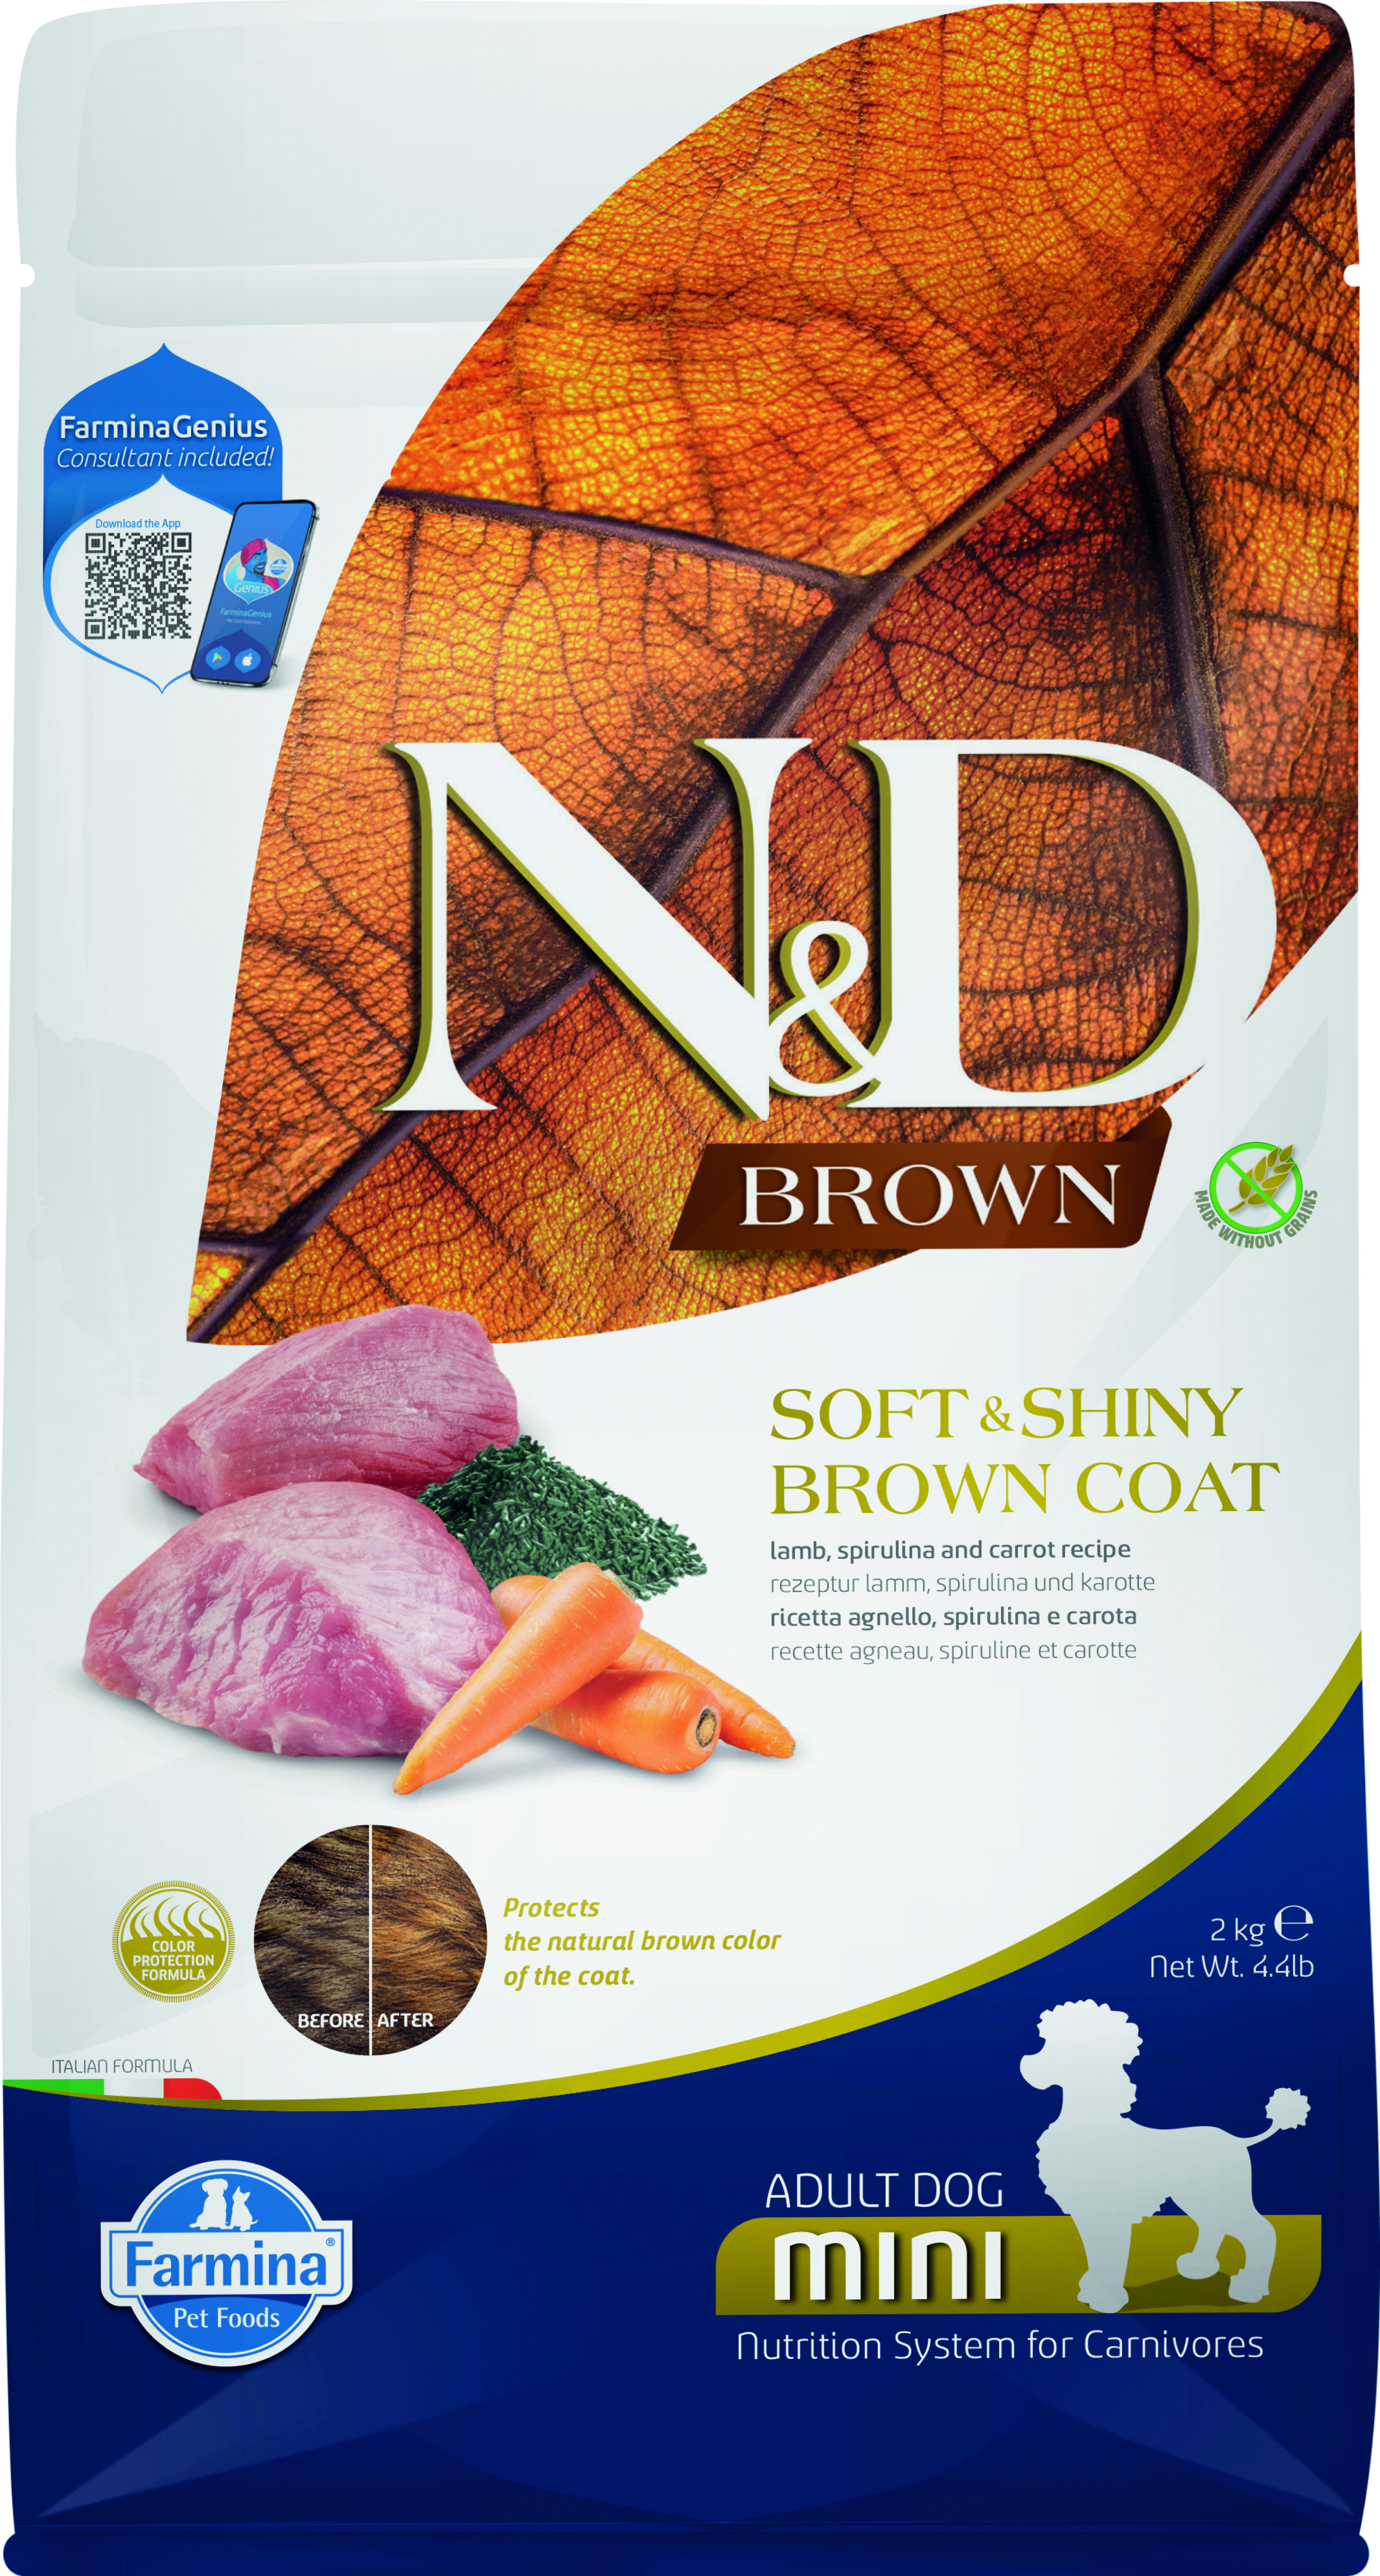 4.4lb Farmina Brown Coat LM/P/C/Kelp Ad Mini - Health/First Aid